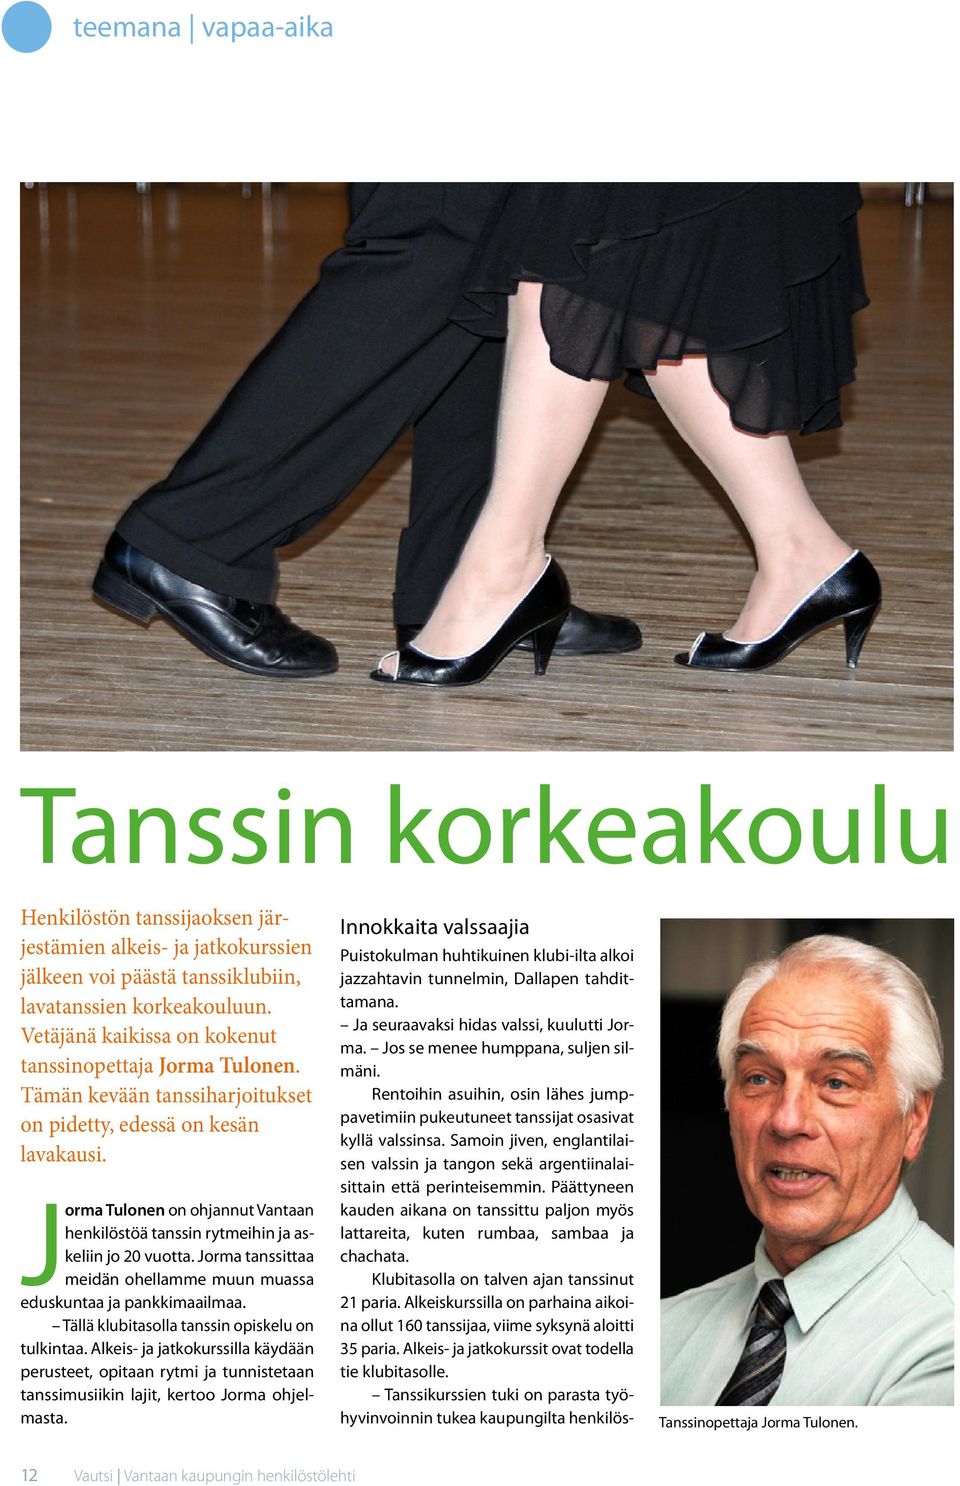 Jorma Tulonen on ohjannut Vantaan henkilöstöä tanssin rytmeihin ja askeliin jo 20 vuotta. Jorma tanssittaa meidän ohellamme muun muassa eduskuntaa ja pankkimaailmaa.